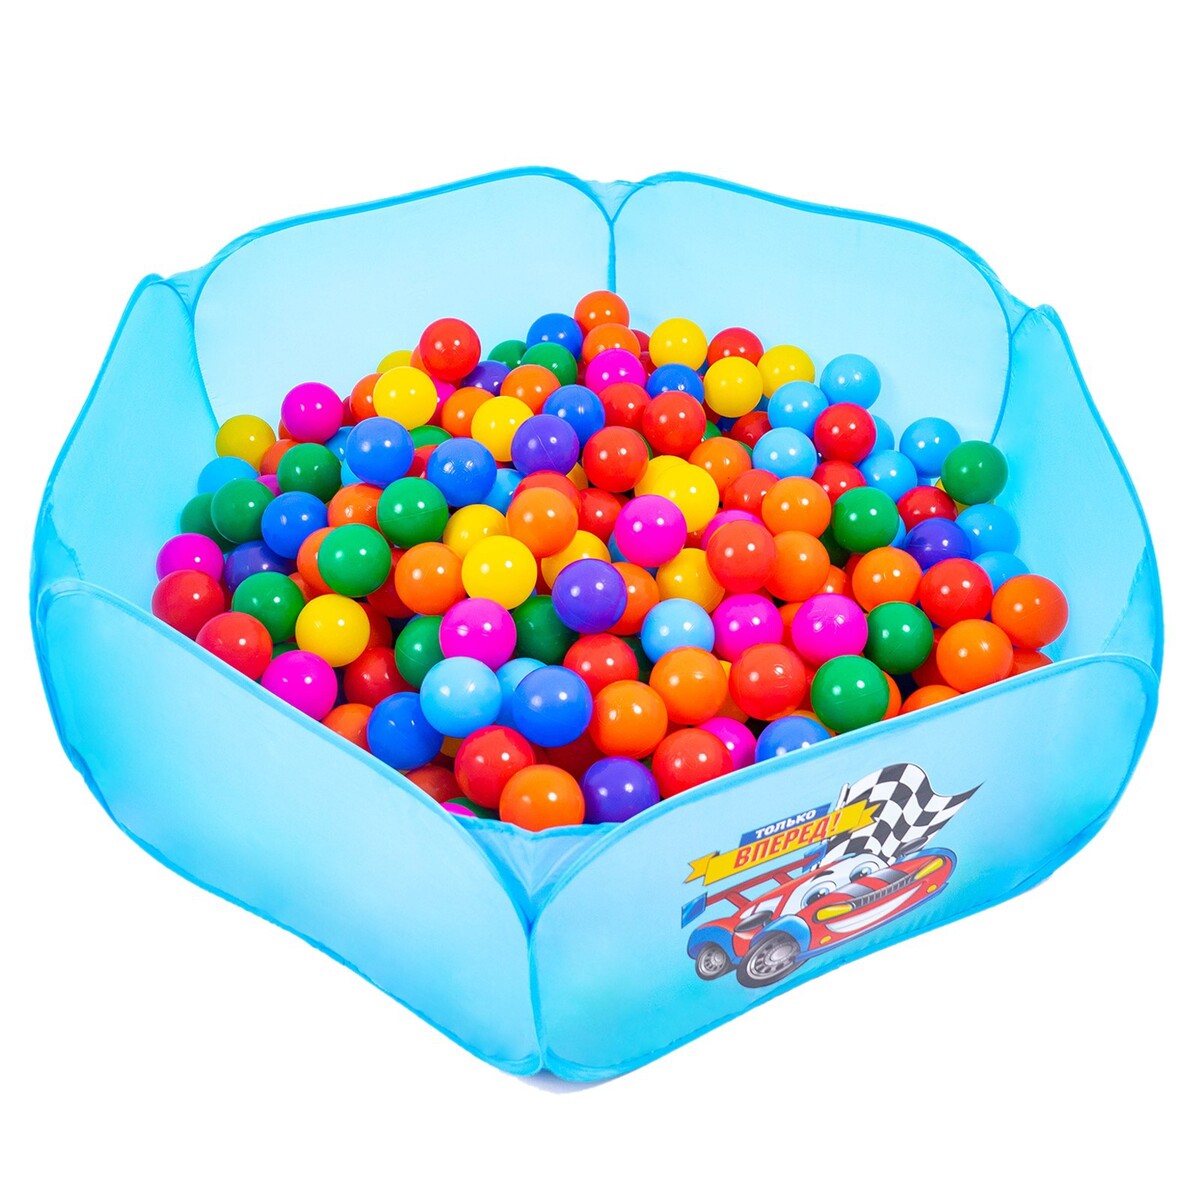 Шарики для сухого бассейна с рисунком, диаметр шара 7,5 см, набор 30 штук, разноцветные шарики для сухого бассейна 100 штук диаметр 5 см